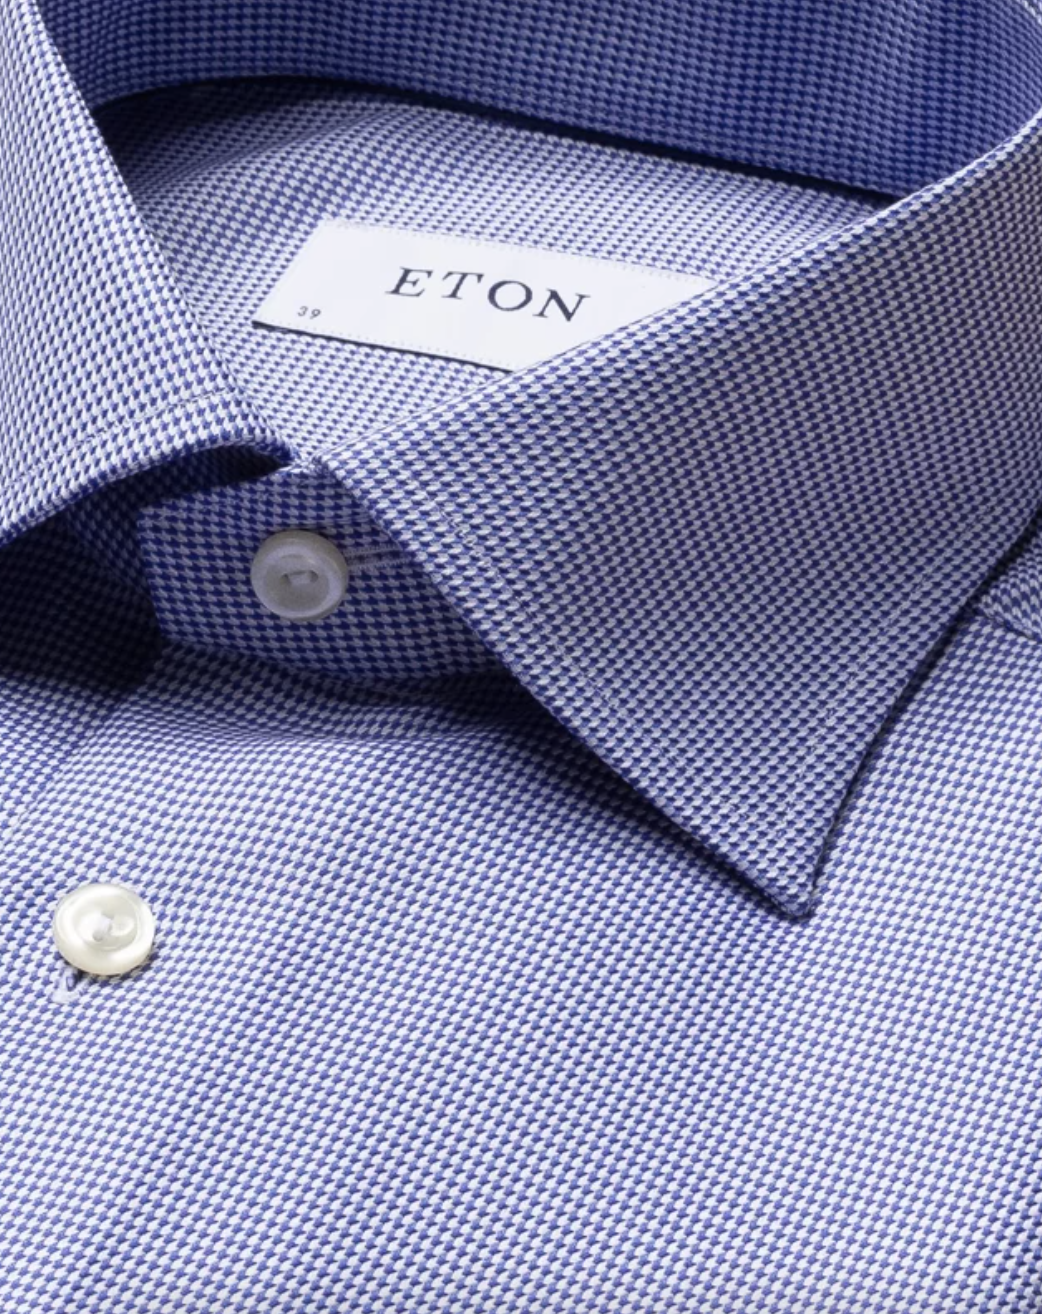 Eton Skjorte Contemporary Fit Blå Hundetann krage